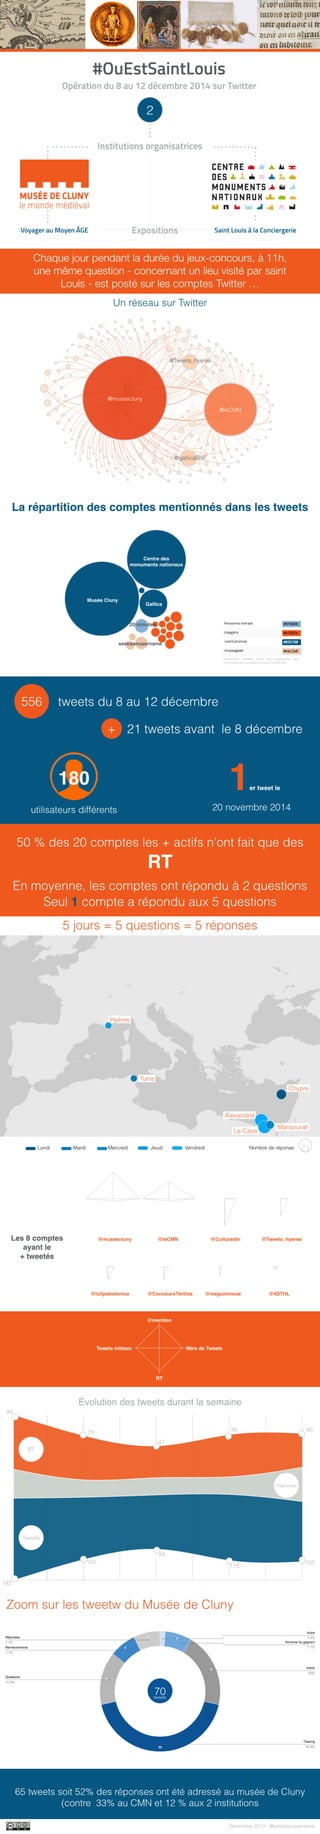 #OuEstSaintLouis: opération Twitter organisée par le musée de Cluny et le Centre des monuments nationaux